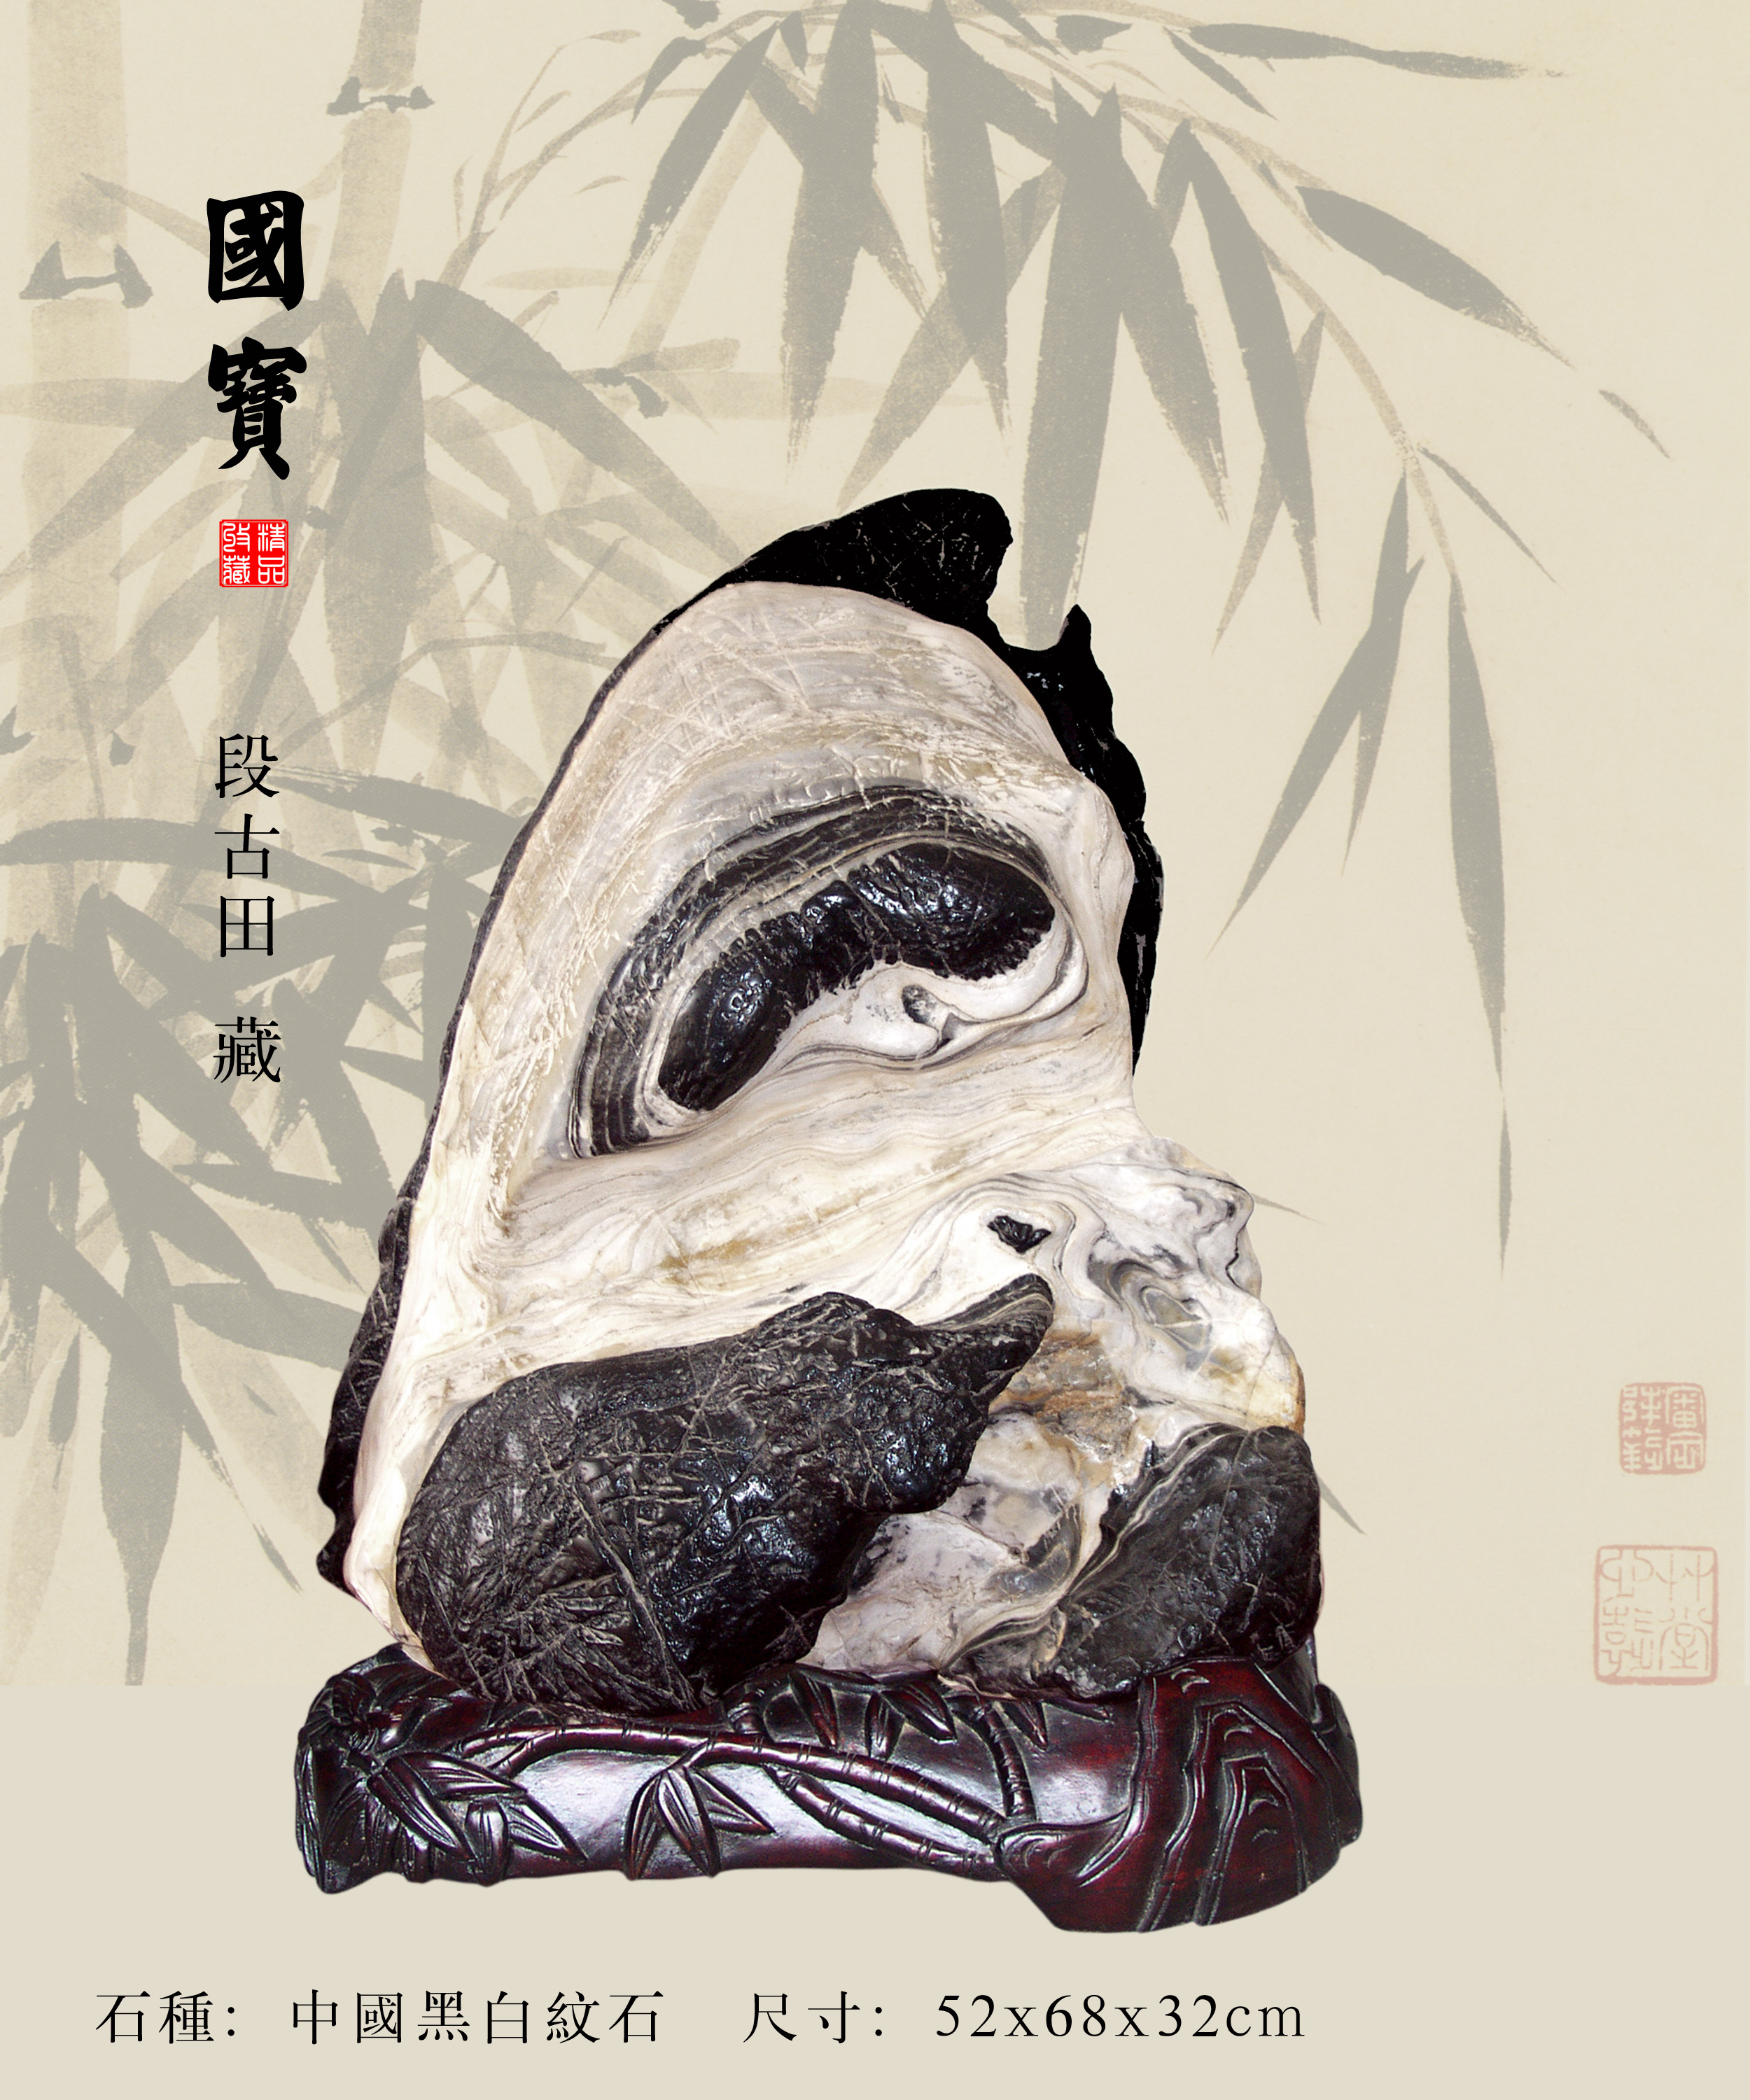 熊猫 - 石馆 - 国石网